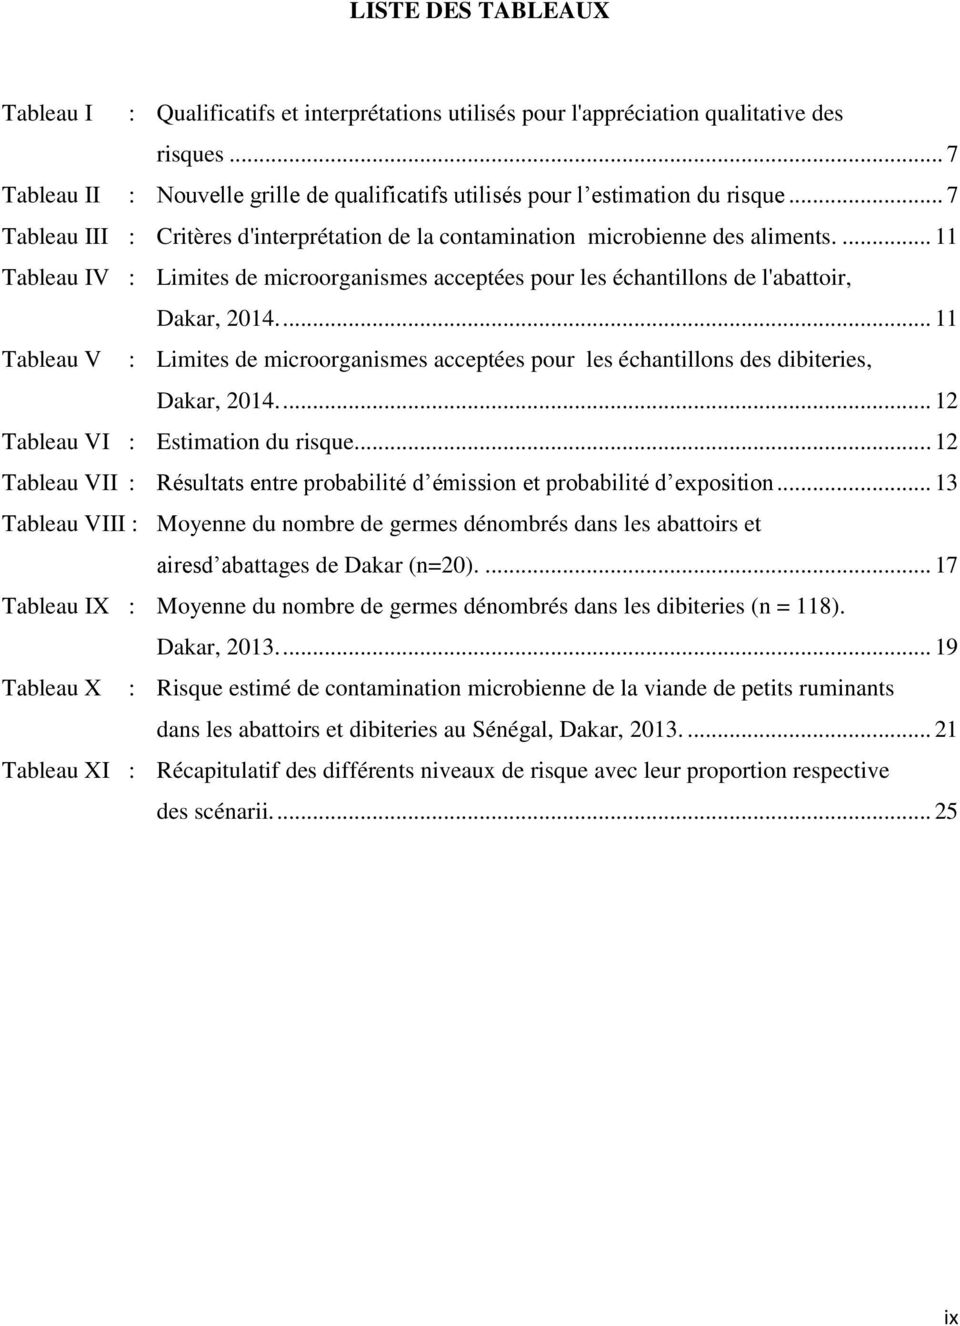 ... 11 Tableau V : Limites de microorganismes acceptées pour les échantillons des dibiteries, Dakar, 2014.... 12 Tableau VI : stimation du risque.